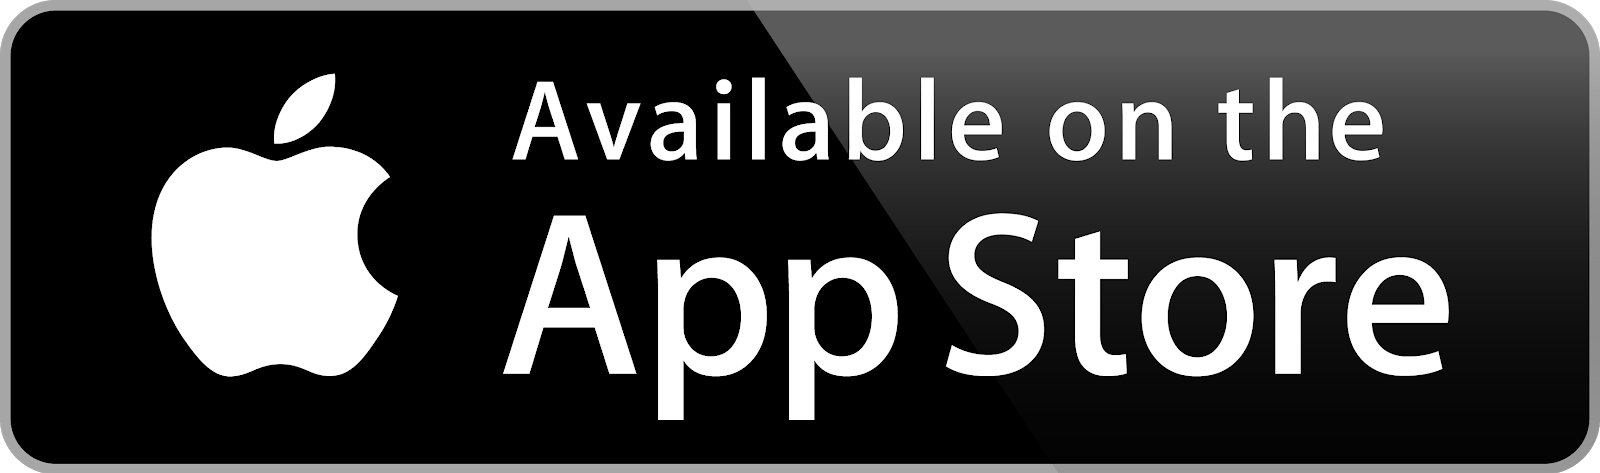 app_store_download